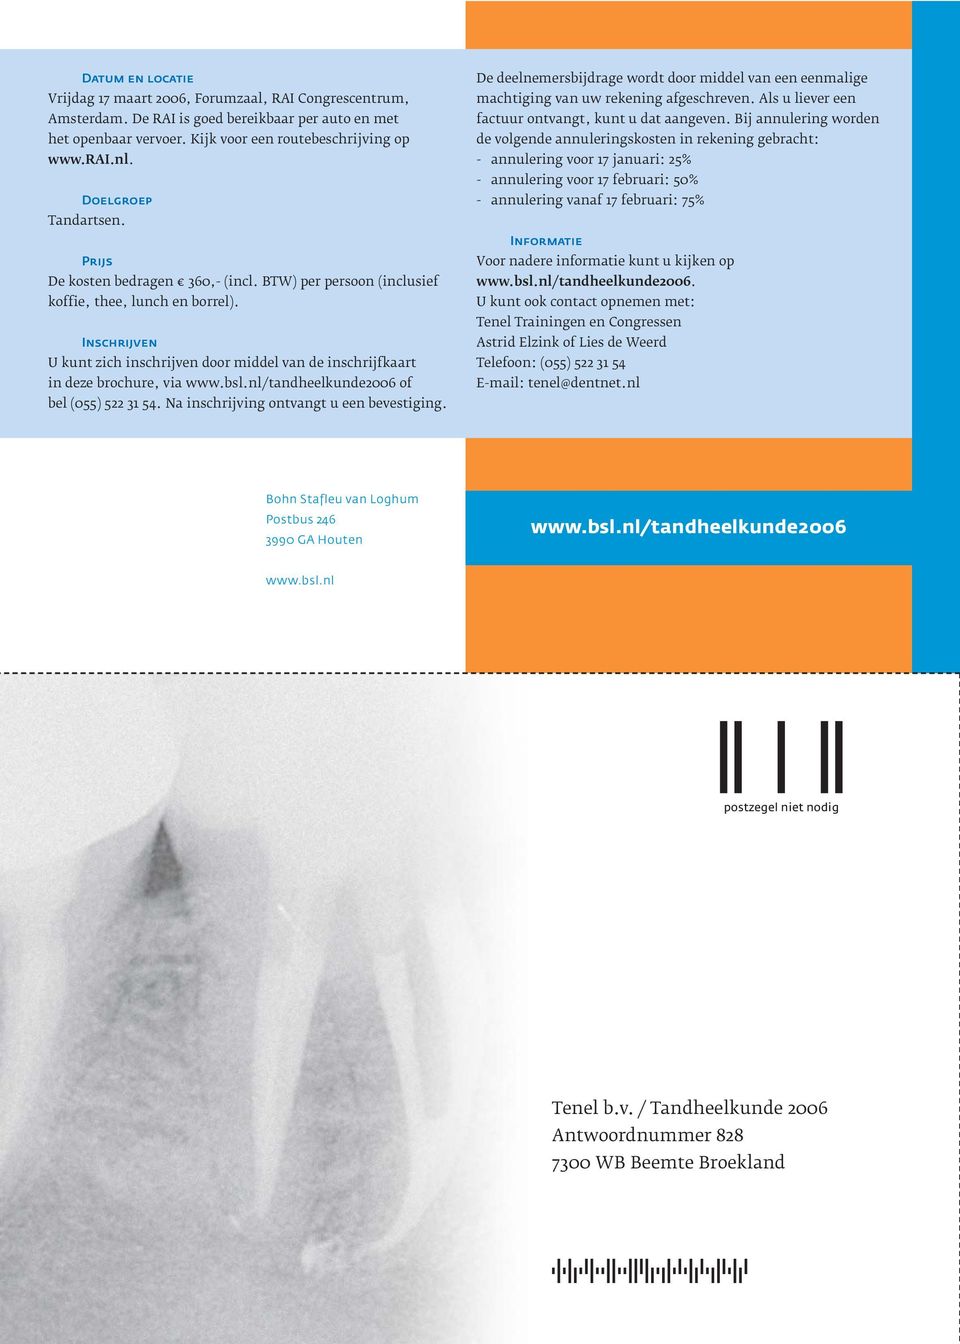 Inschrijven U kunt zich inschrijven door middel van de inschrijfkaart in deze brochure, via www.bsl.nl/tandheelkunde2006 of bel (055) 522 31 54. Na inschrijving ontvangt u een bevestiging.